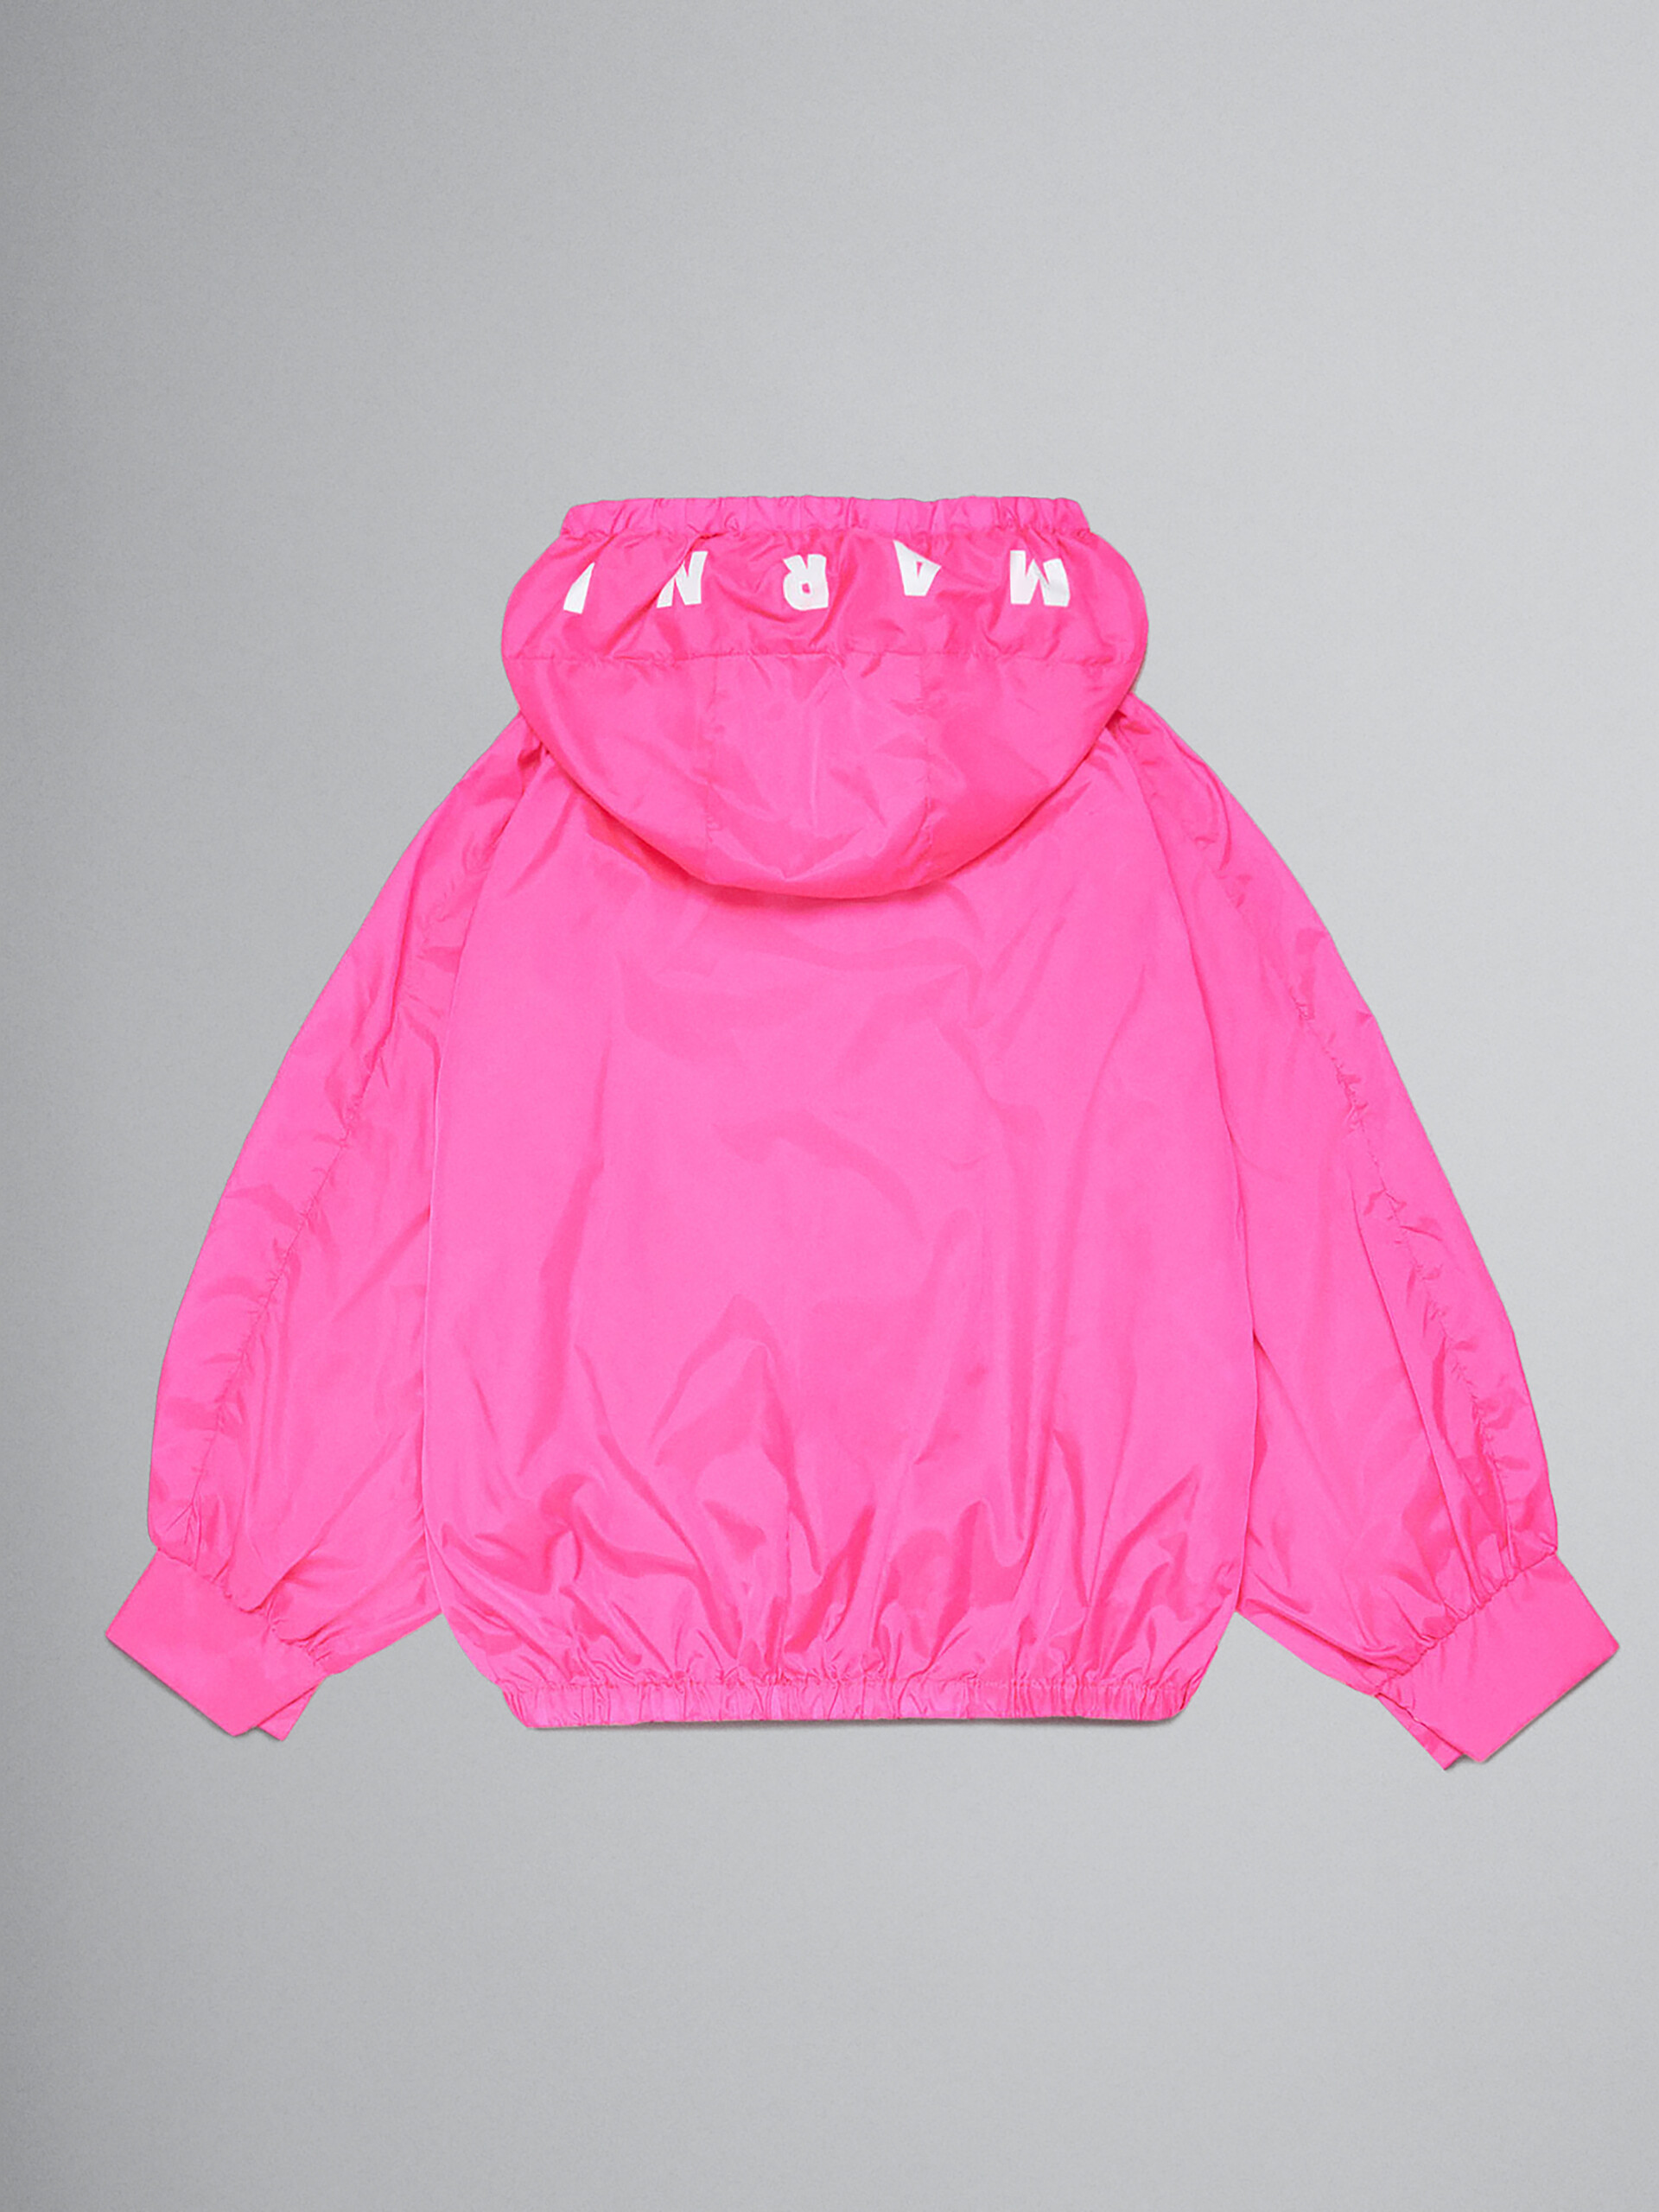 Chaqueta impermeable rosa neón con logotipo en la capucha - Chaquetas - Image 2